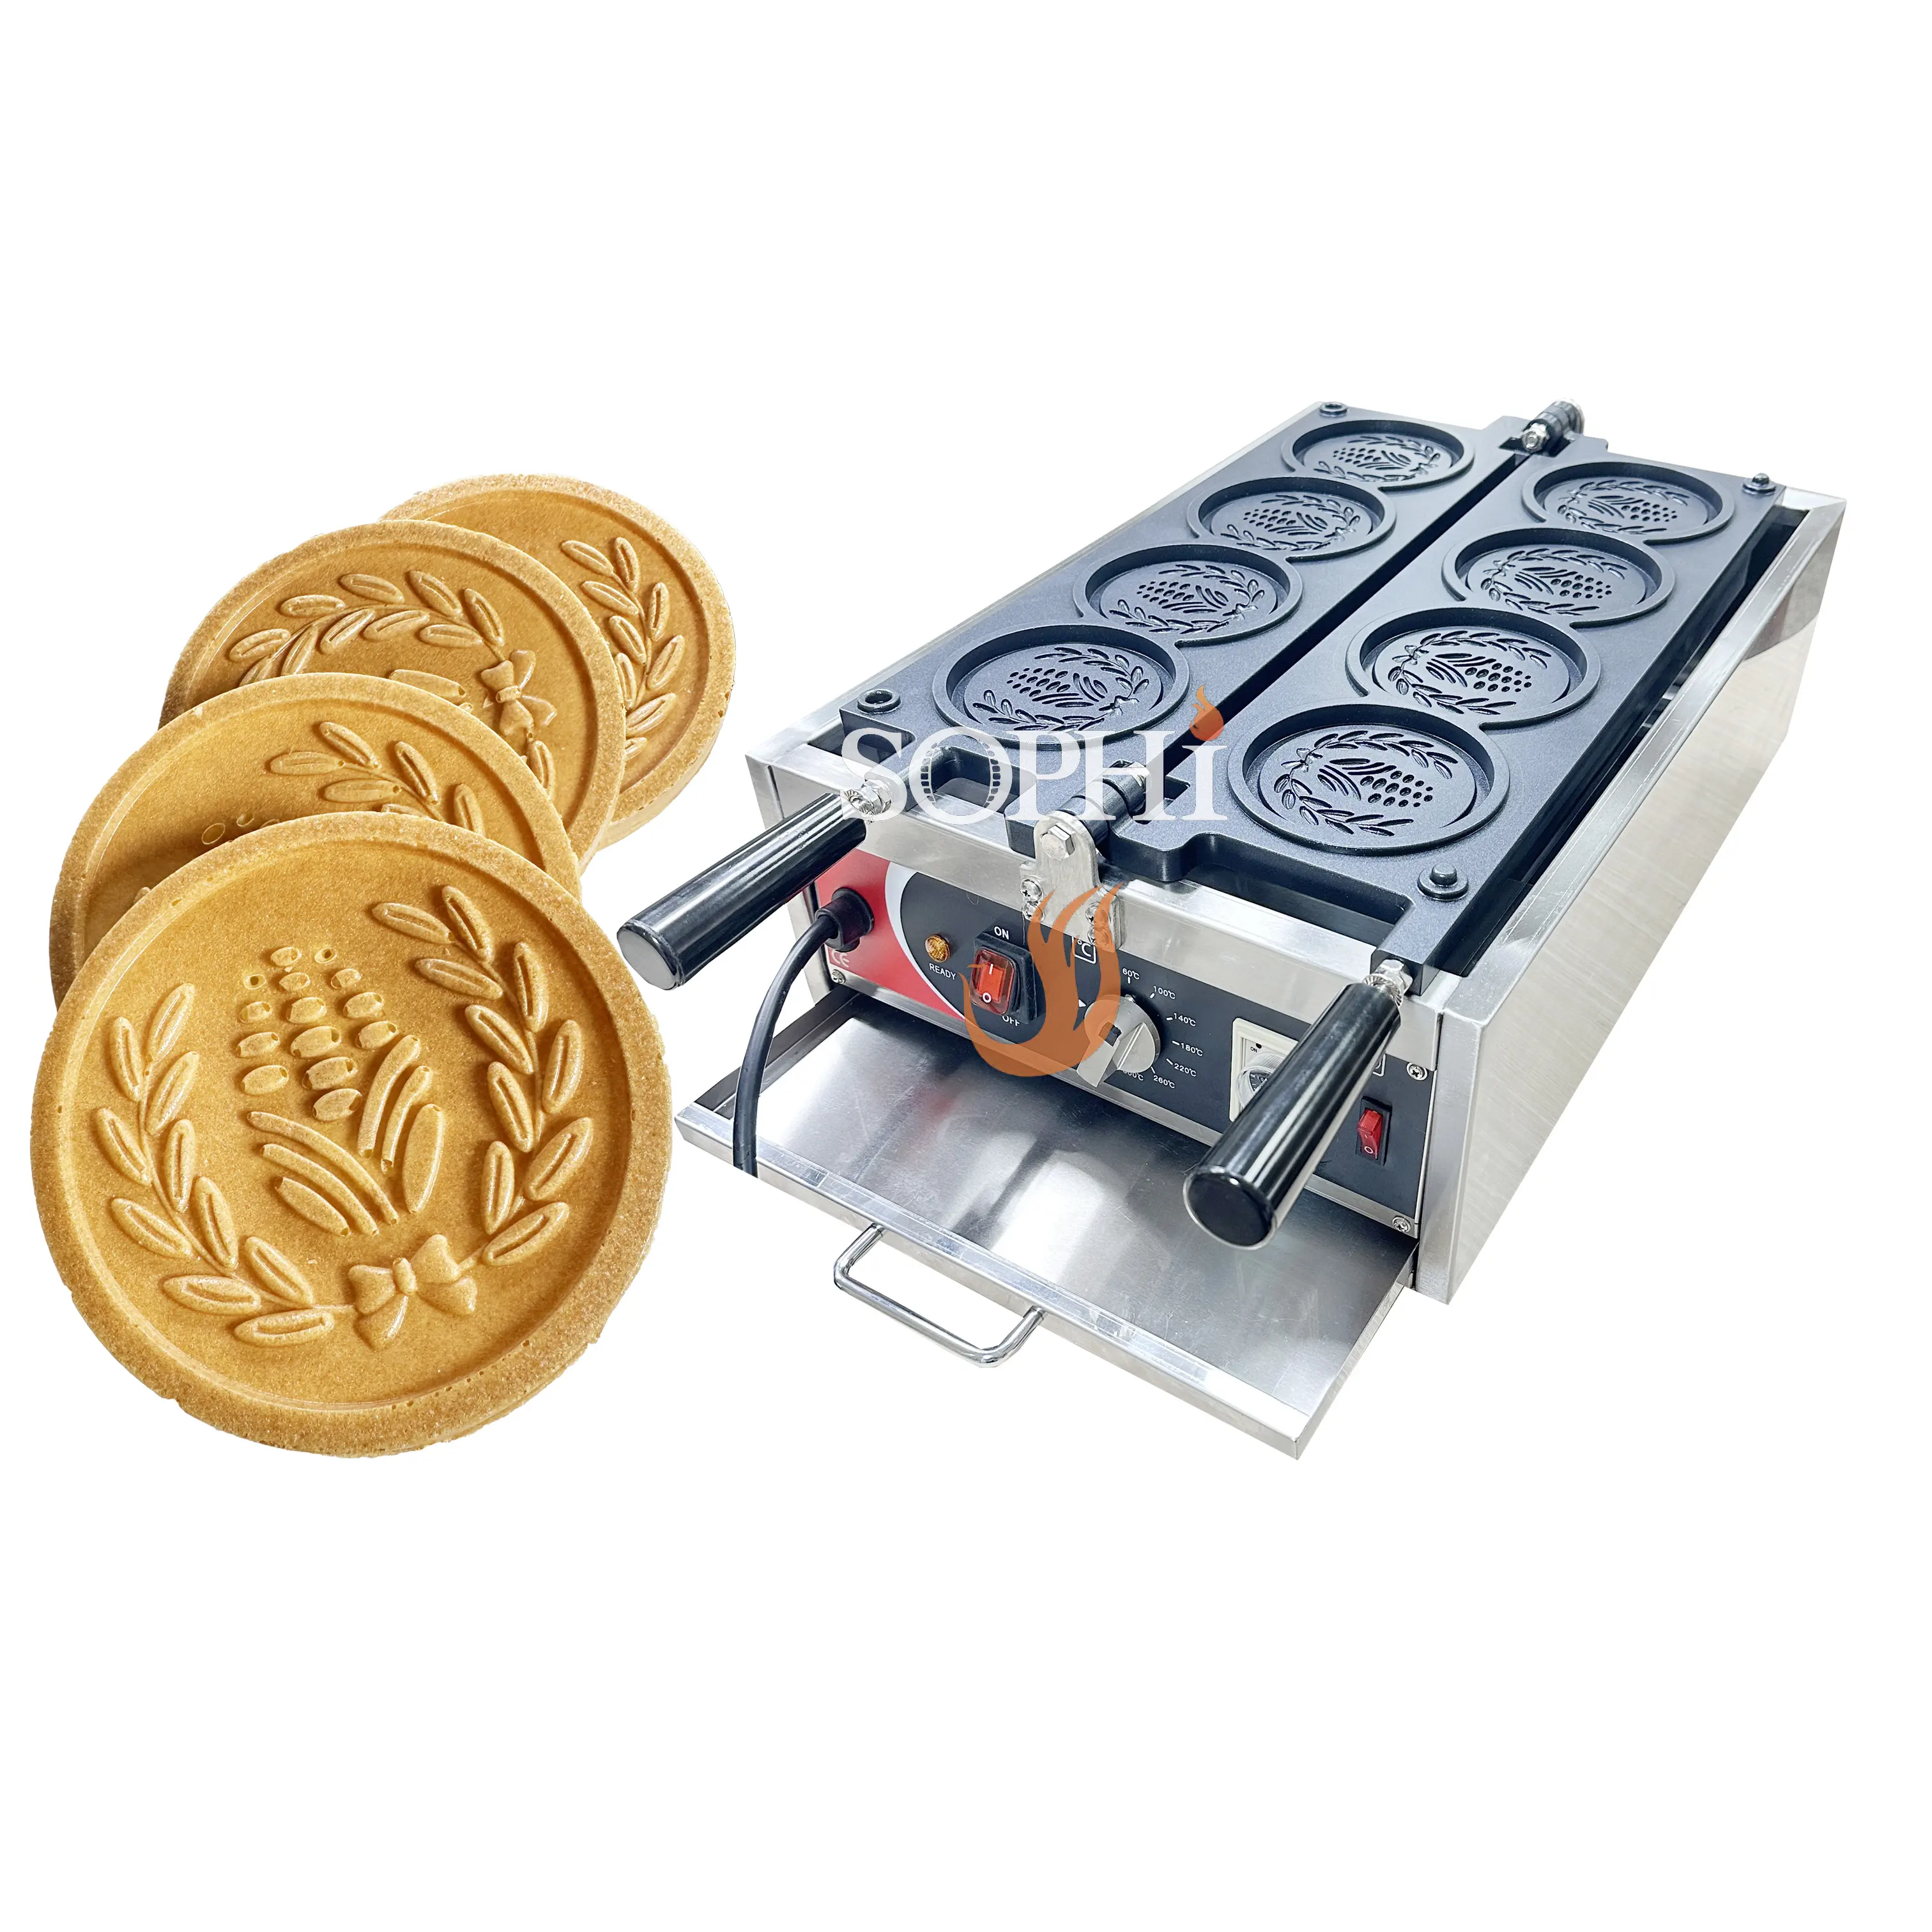 ماكينة خبز كعك وتعمل بالقطع المعدنية مقاس 110 ملليمترًا ماكينة صنع الوافل تجارية على شكل ذرة ماكينة صنع البان كيك الصغيرة مخبز الوافل